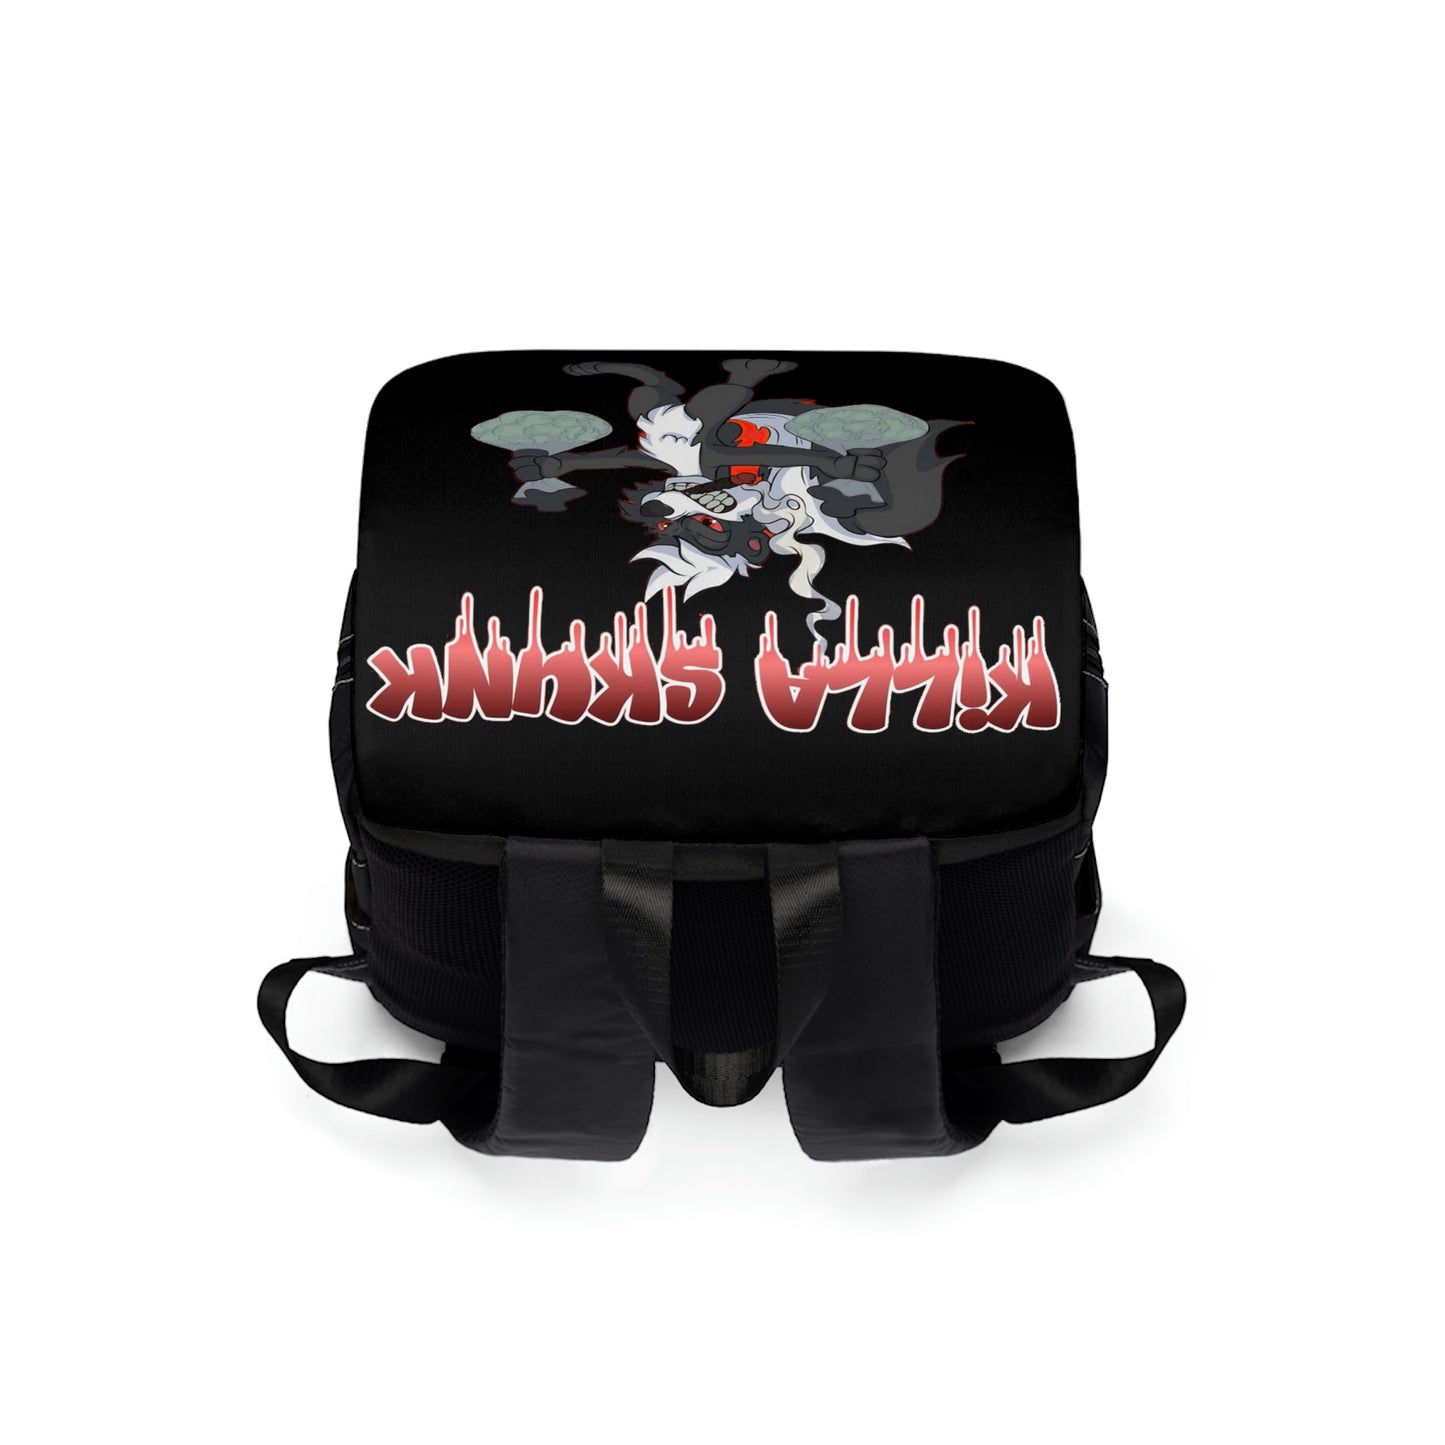 Killa Skunk Unisex Casual Shoulder Backpack